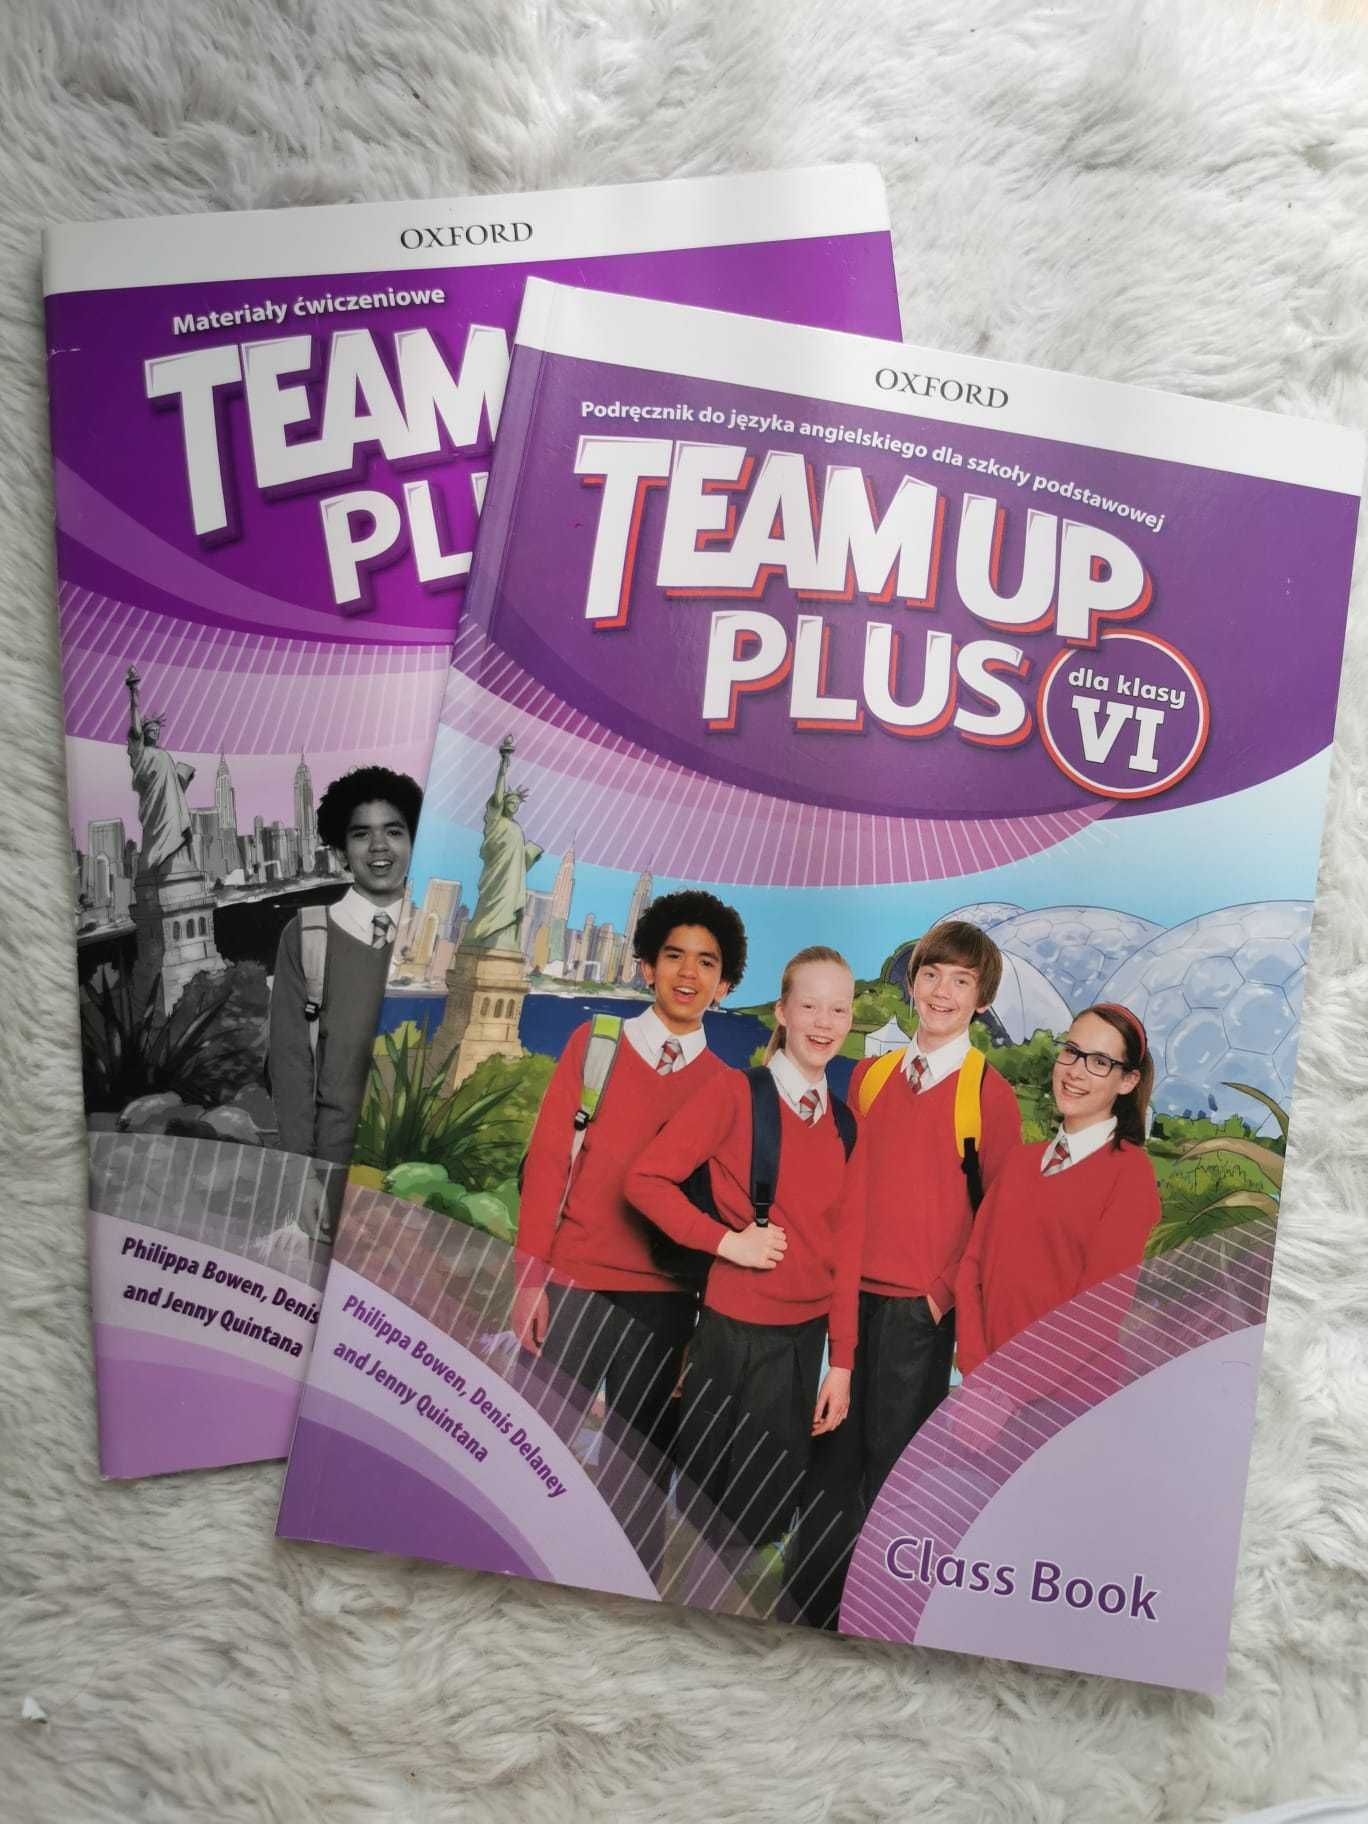 Team up plus dla klasy VI, podręcznik + ćwiczenia + Cd audio